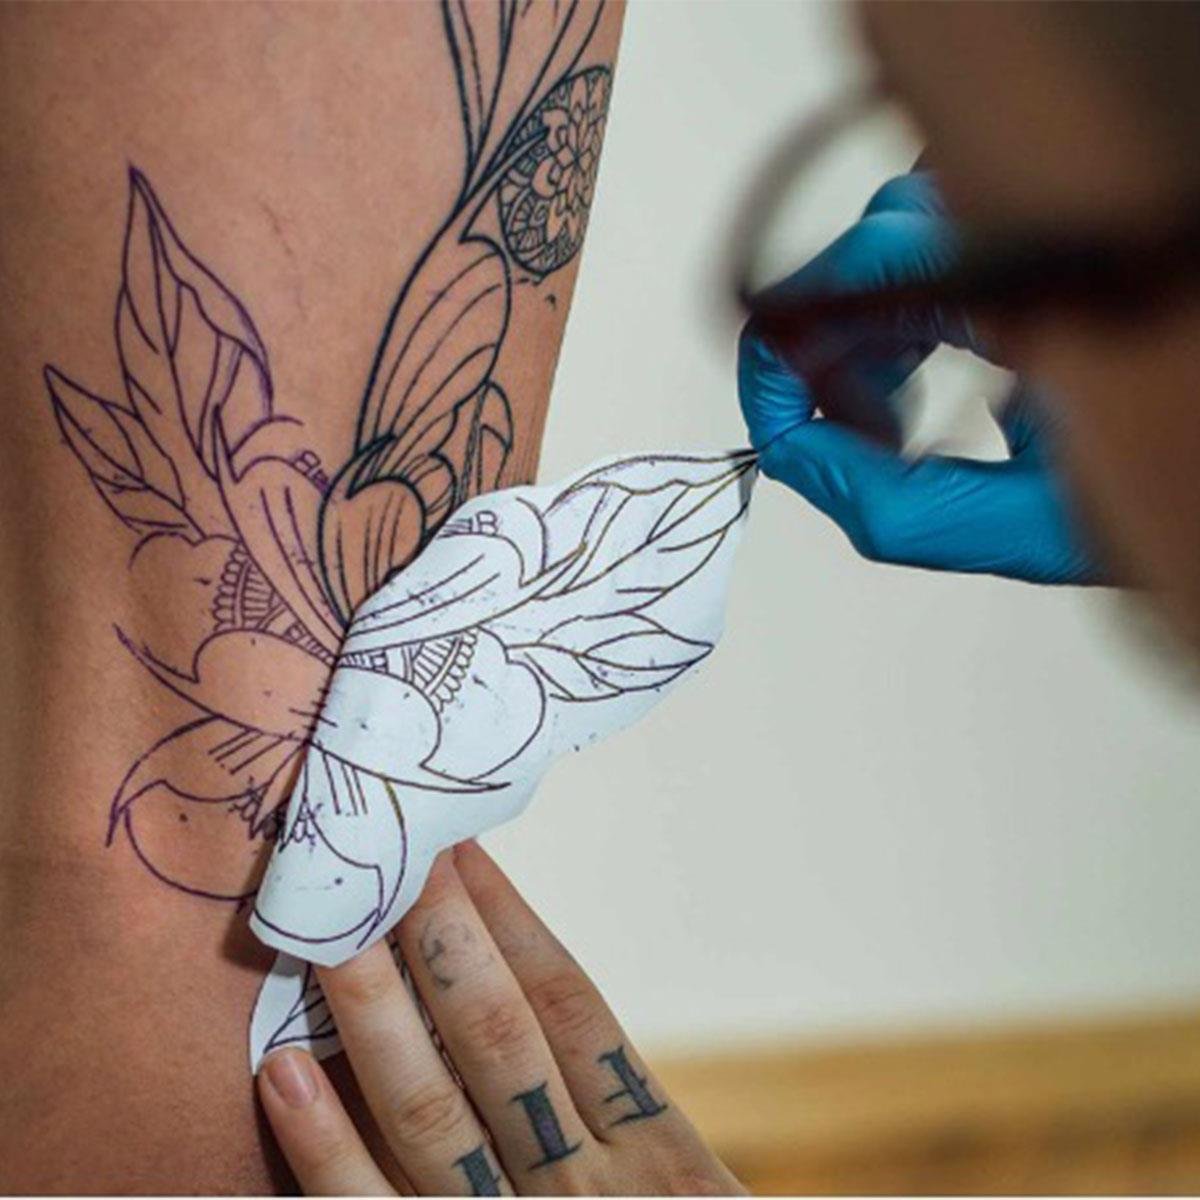 TheMagicTouch Tattoo 2.1 - Ideiglenes Tetoválás - Emlékbázis nagykereskedés